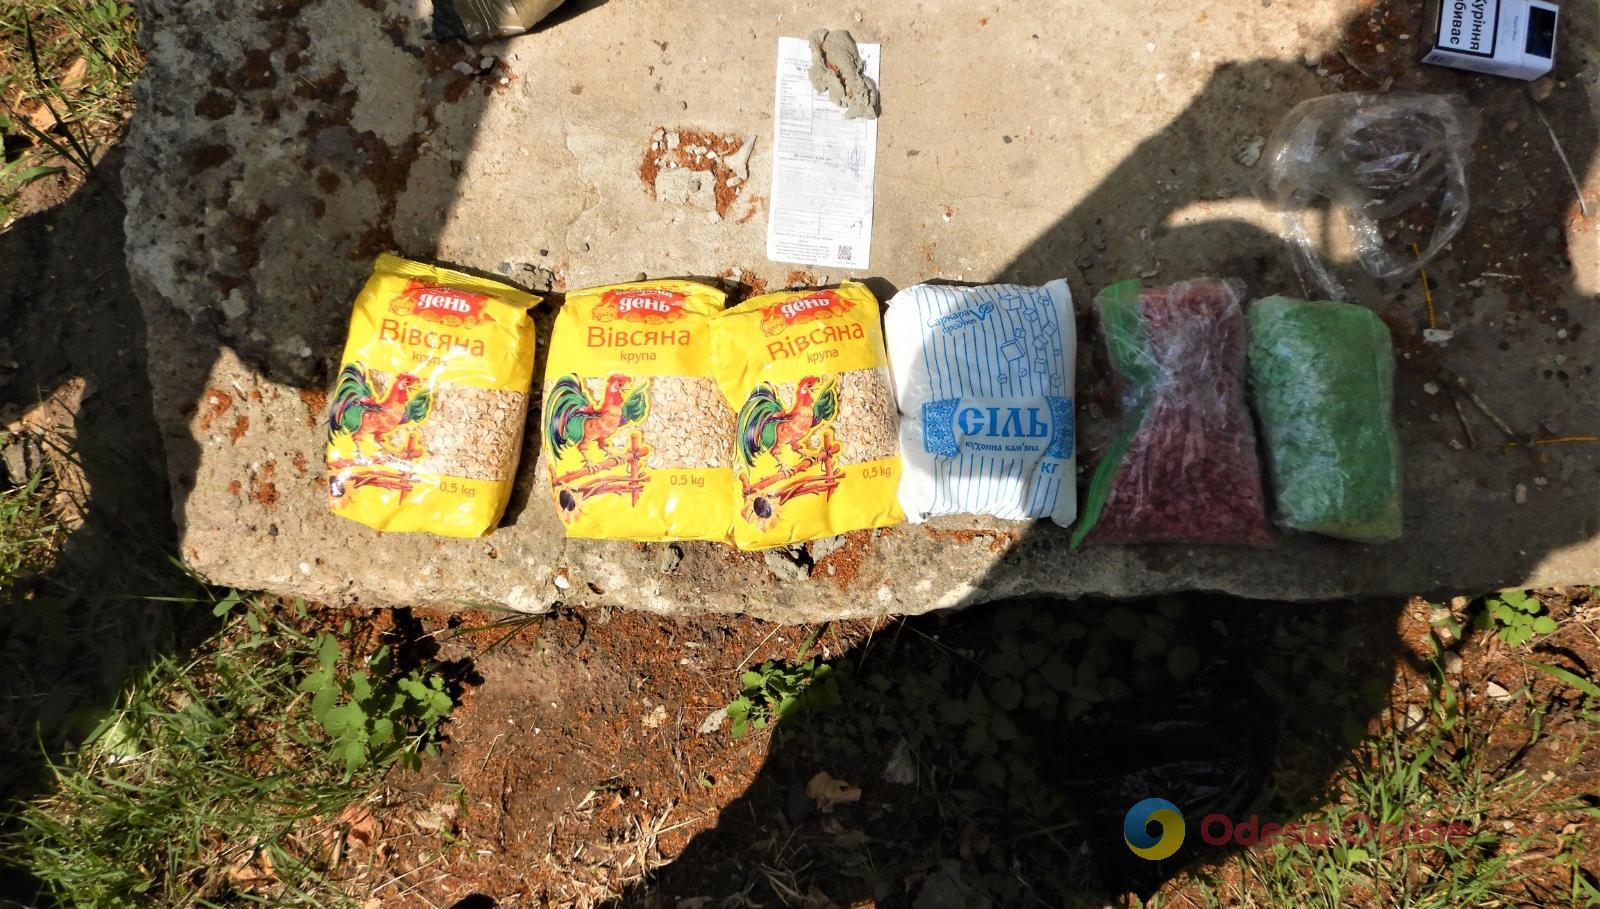 Овсянка, соль и амфетамин: в Одессе задержали мужчину со «специальным» продуктовым набором